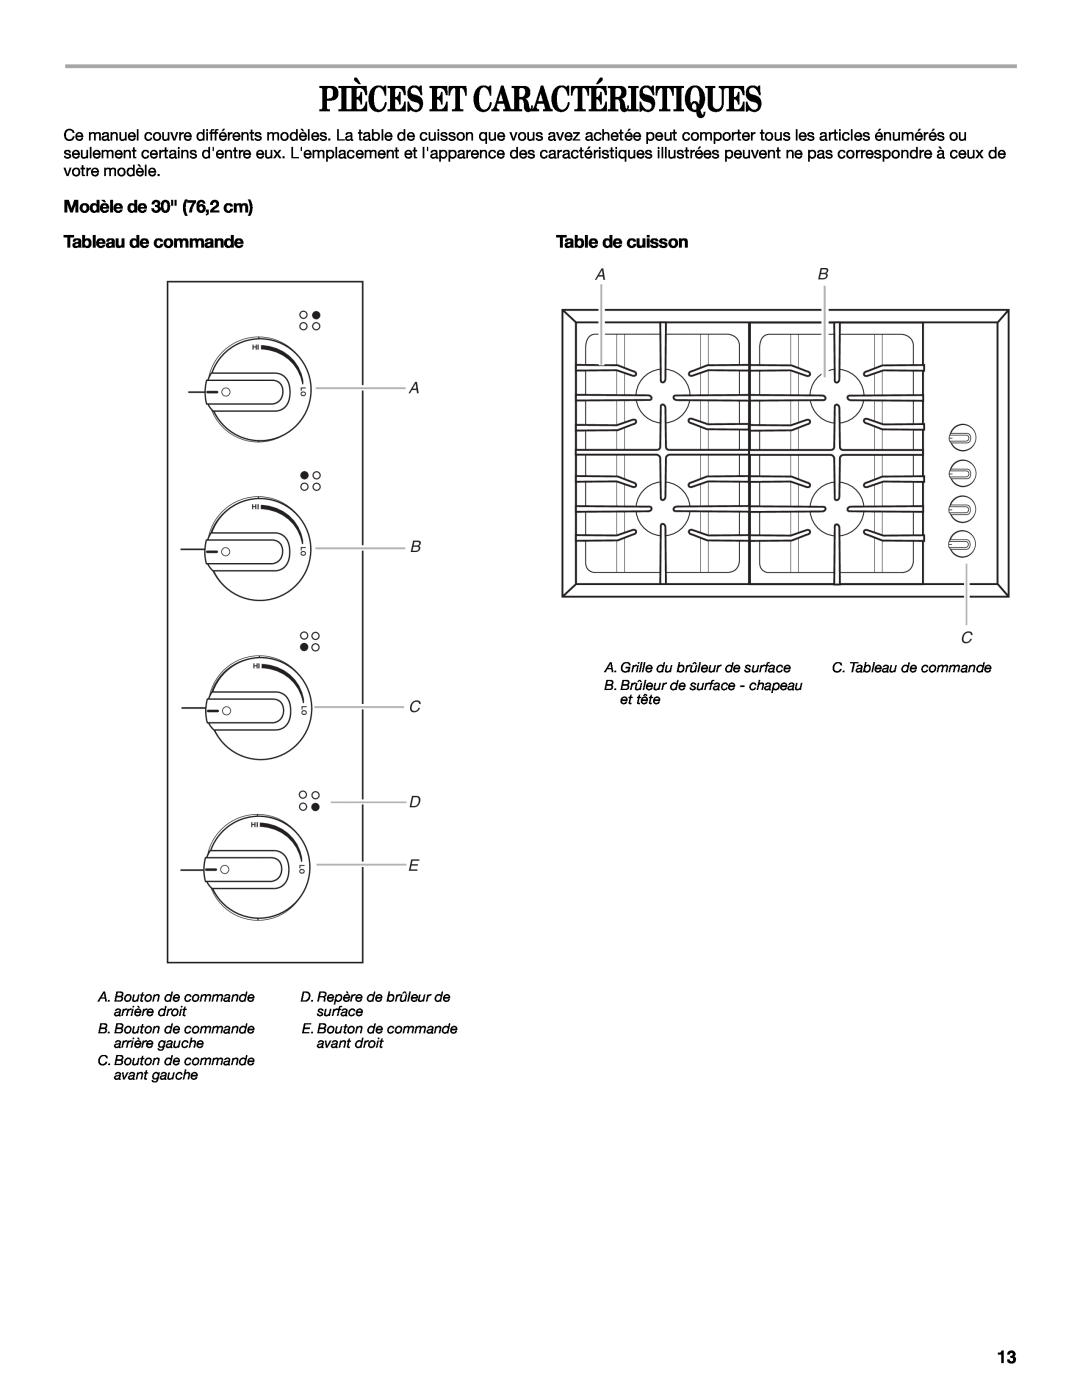 Whirlpool 9761890 manual Pièces Et Caractéristiques, Modèle de 30 76,2 cm Tableau de commande, Table de cuisson 